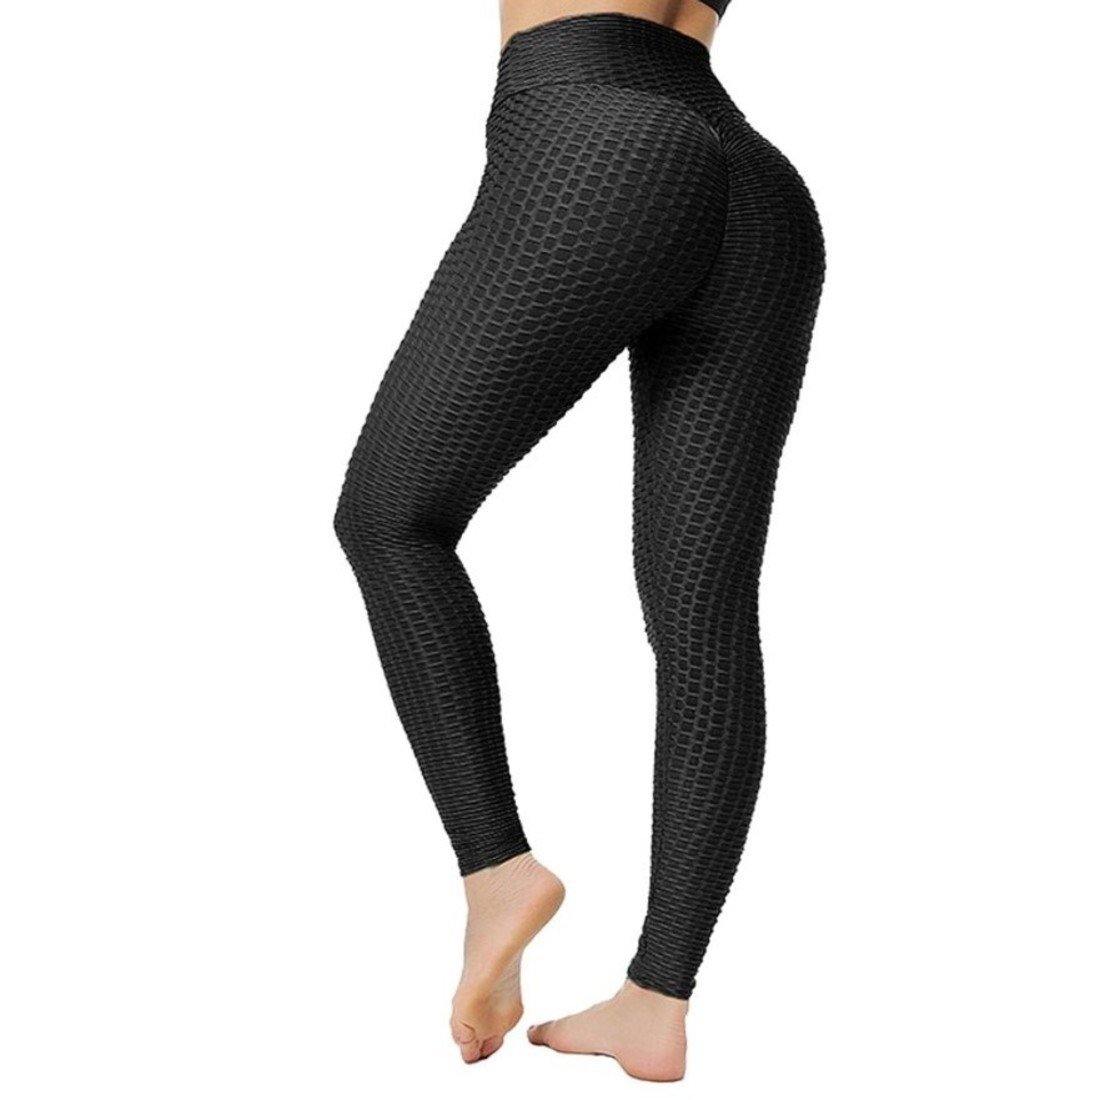 High Waist Butt Lift Tiktok Leggings Yoga Pants - S / Black